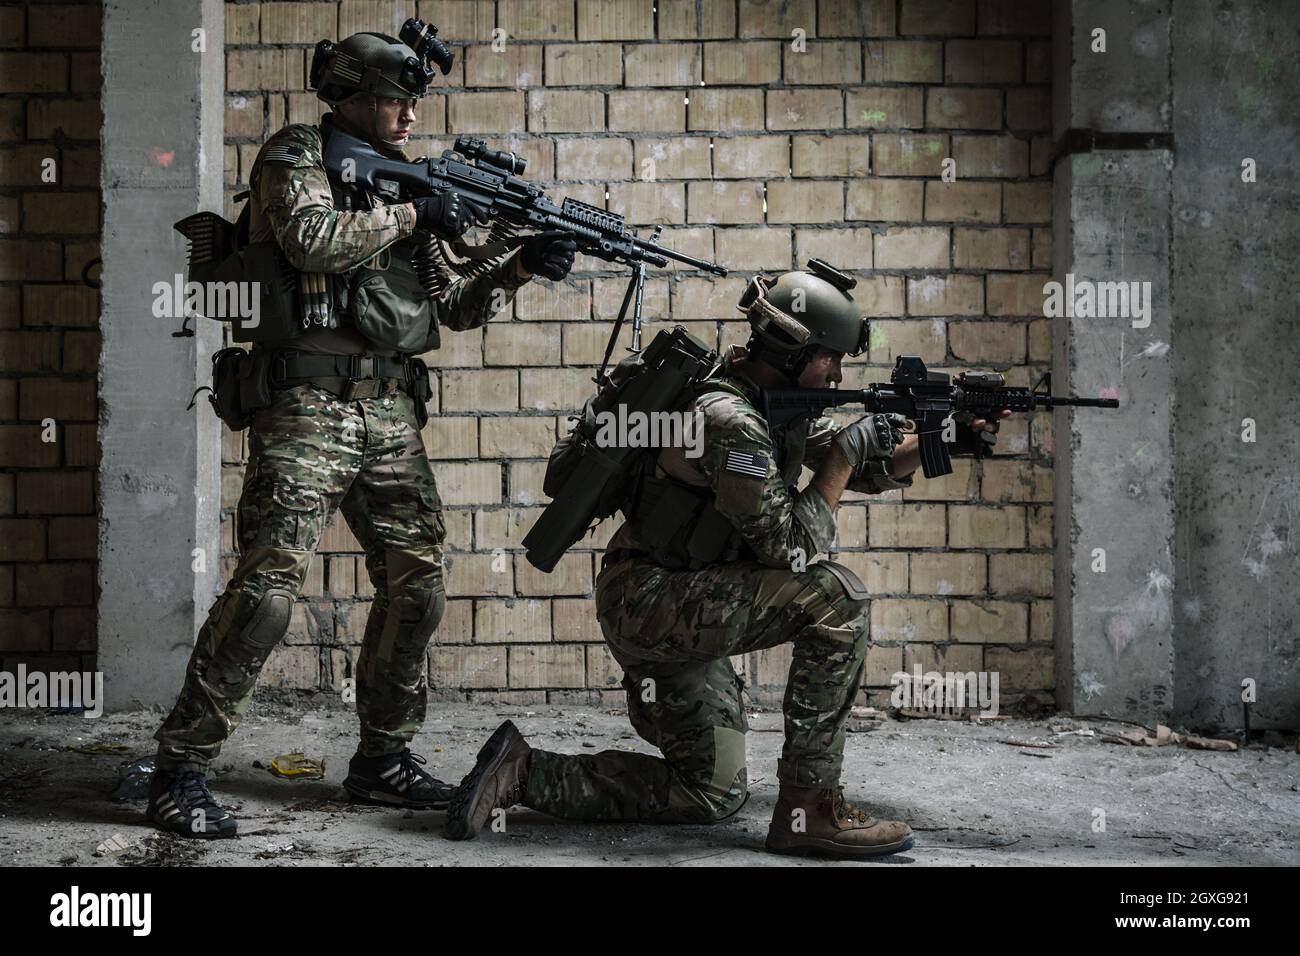 Ein Paar US Army Rangers mit Maschinengewehr und Gewehr, die sich auf Militärmission entlang der Mauer nach und nach bewegen Stockfoto